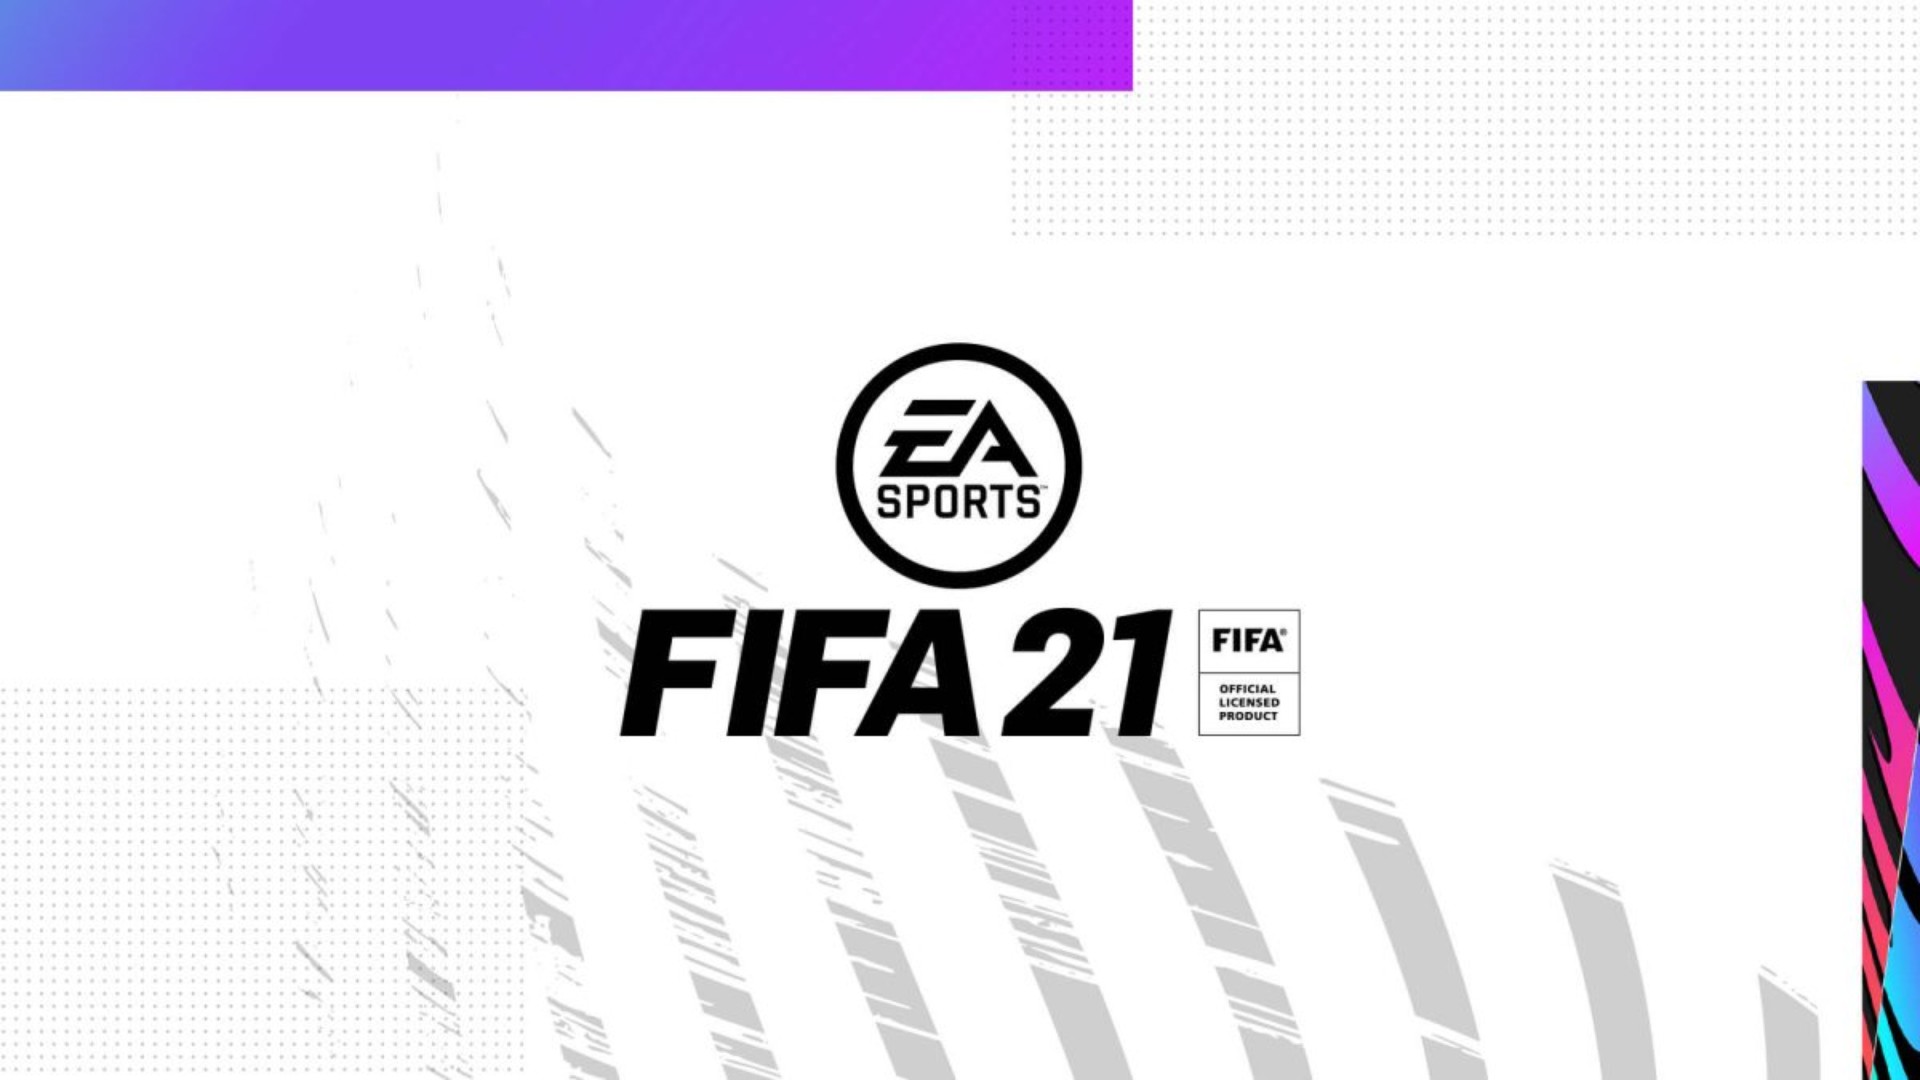 کمپانی EA قصد دارد نام بازی فیفا را تغییر دهد